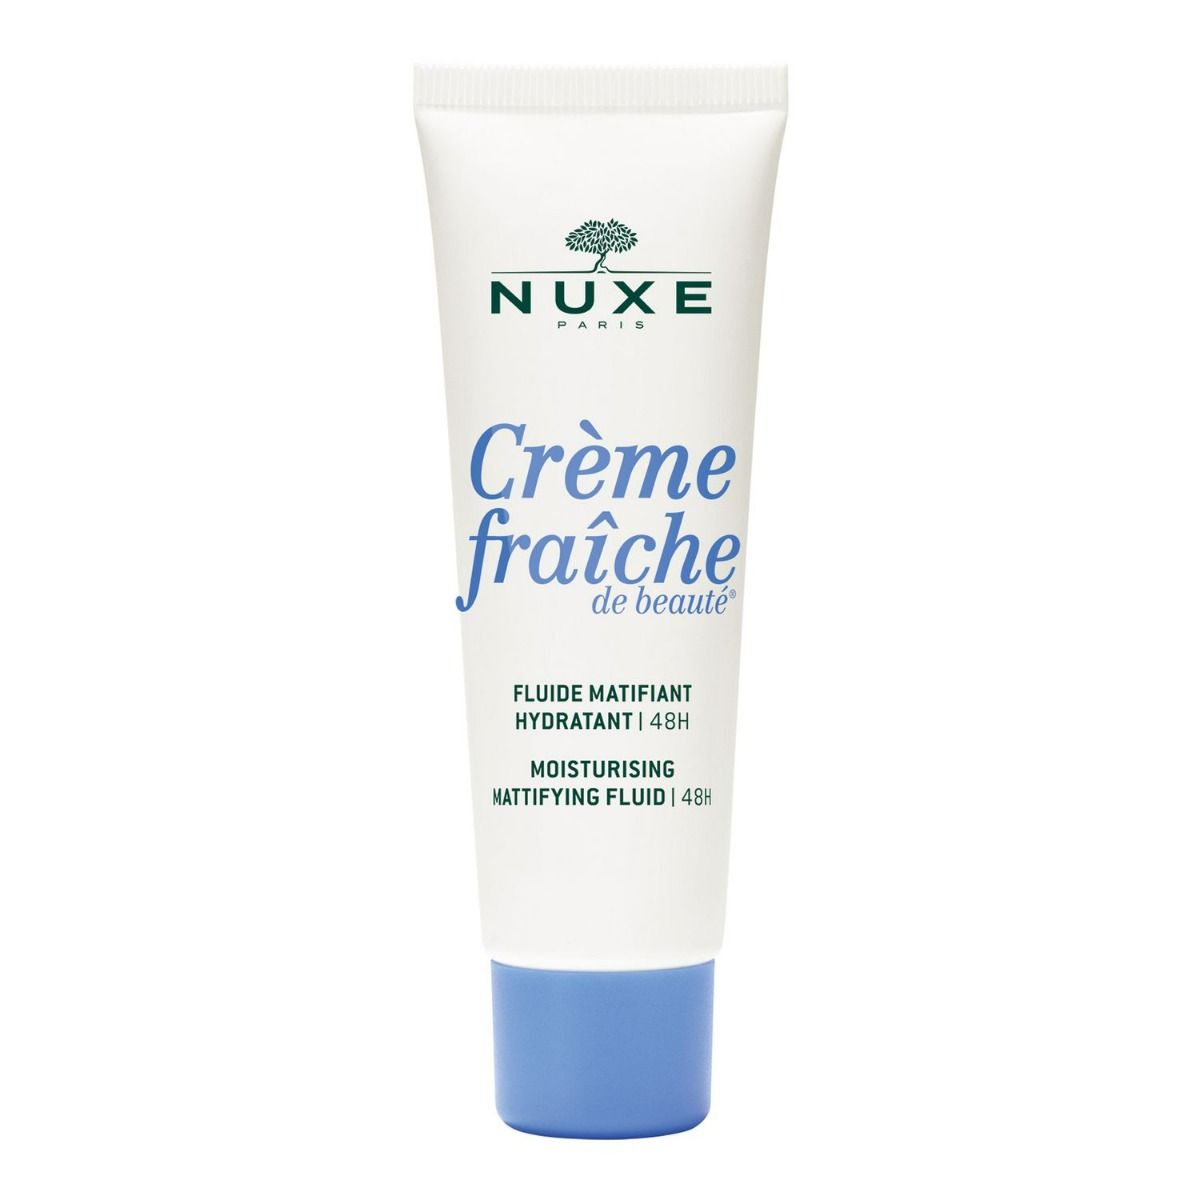 Nuxe Crème Fraîche de Beauté крем для лица, 50 ml nuxe crème fraîche de beauté крем для лица 30 ml